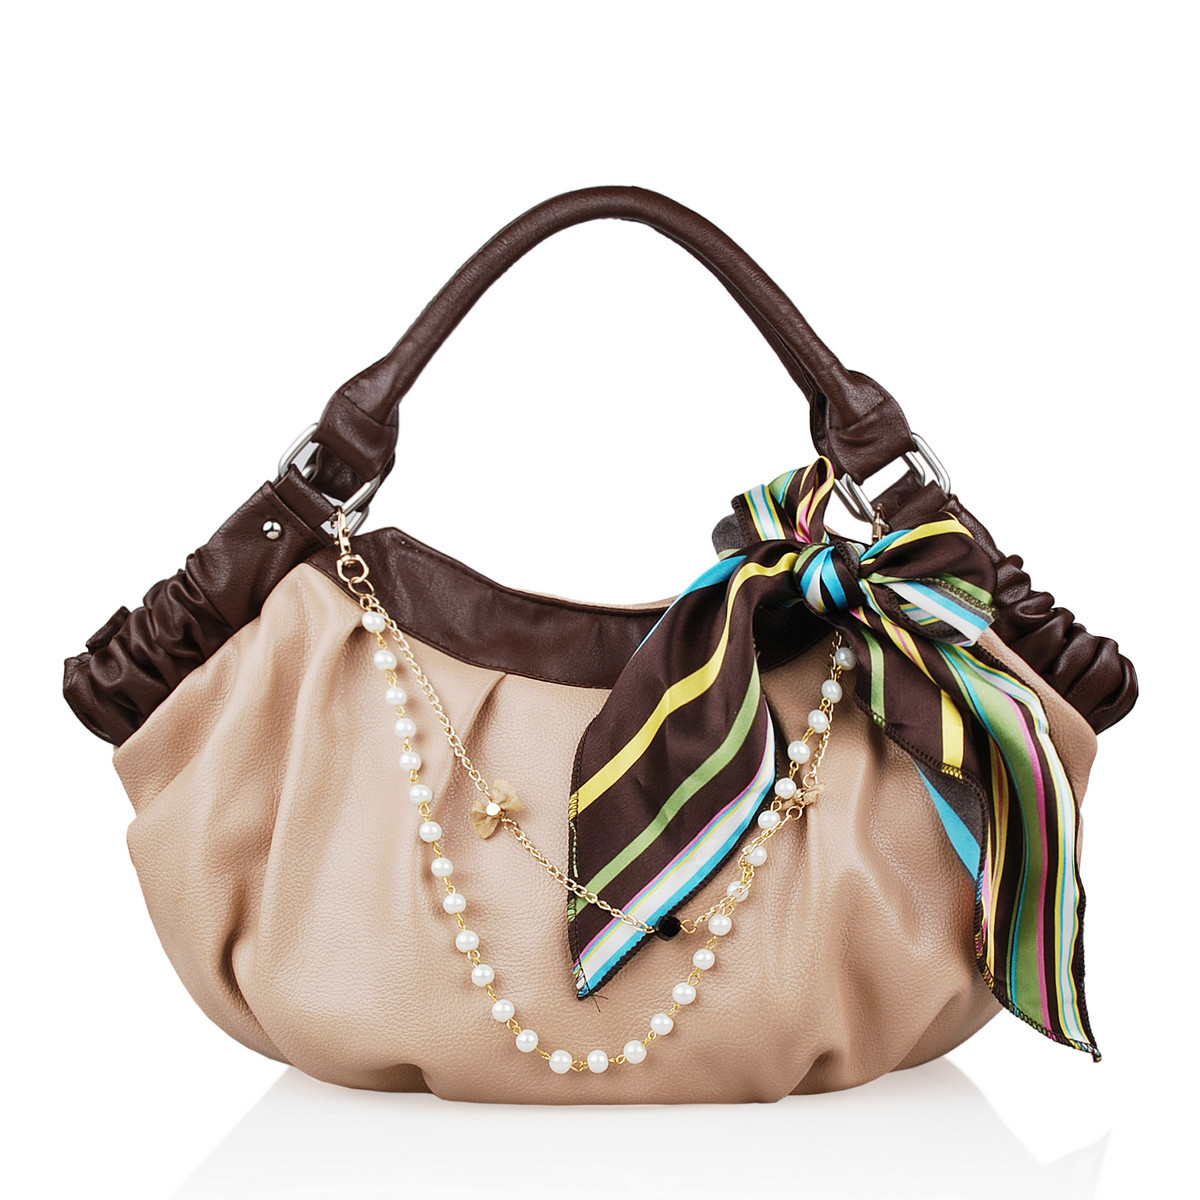 http://i01.i.aliimg.com/wsphoto/v0/1174000171/2013-women-s-bags-fashion-elegant-bag-for-women-fashion-vintage-bag-PU-bag-one-shoulder.jpg